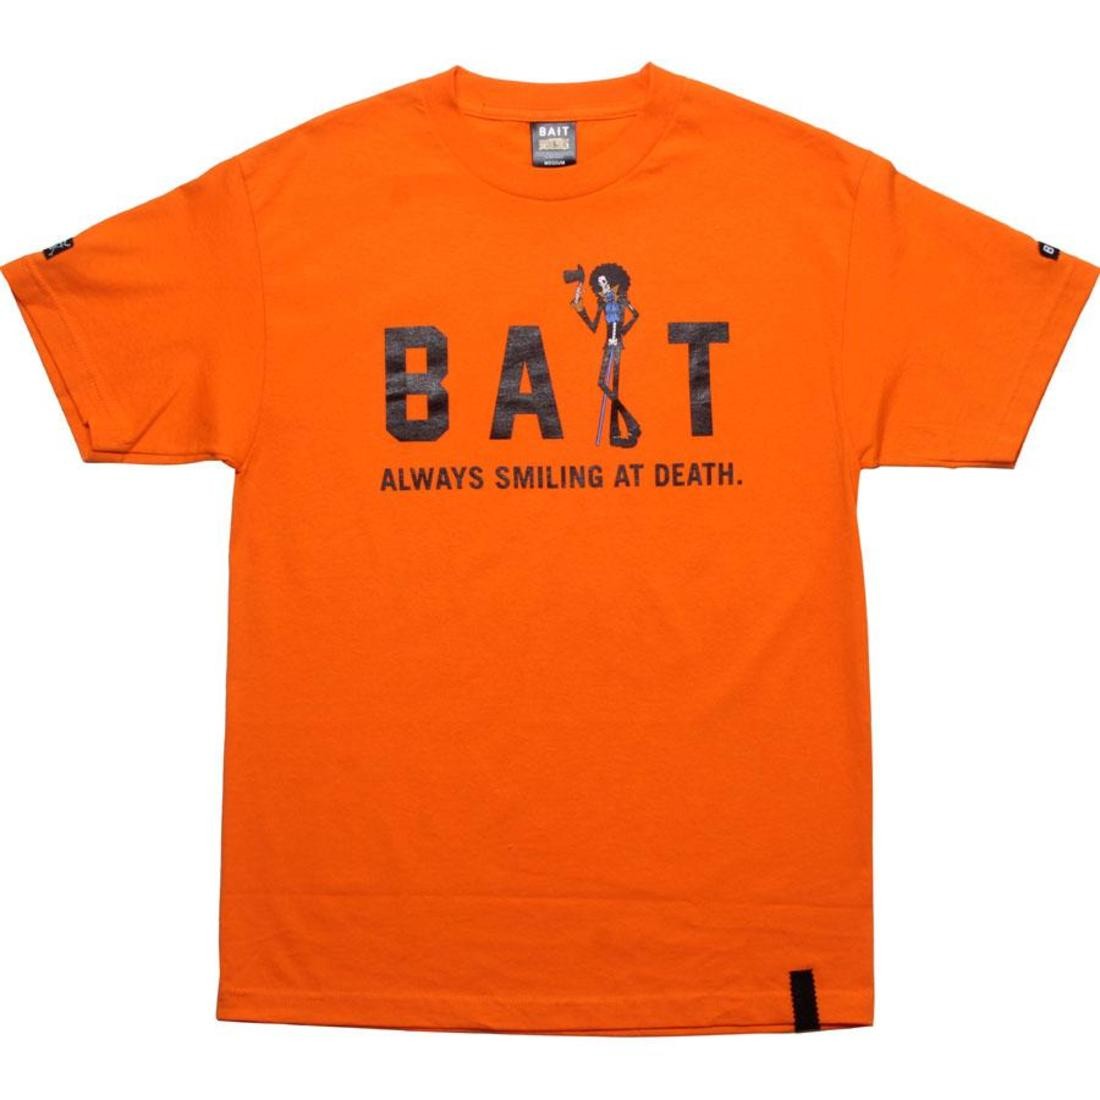 BAIT x One Piece Brook Tee (orange)